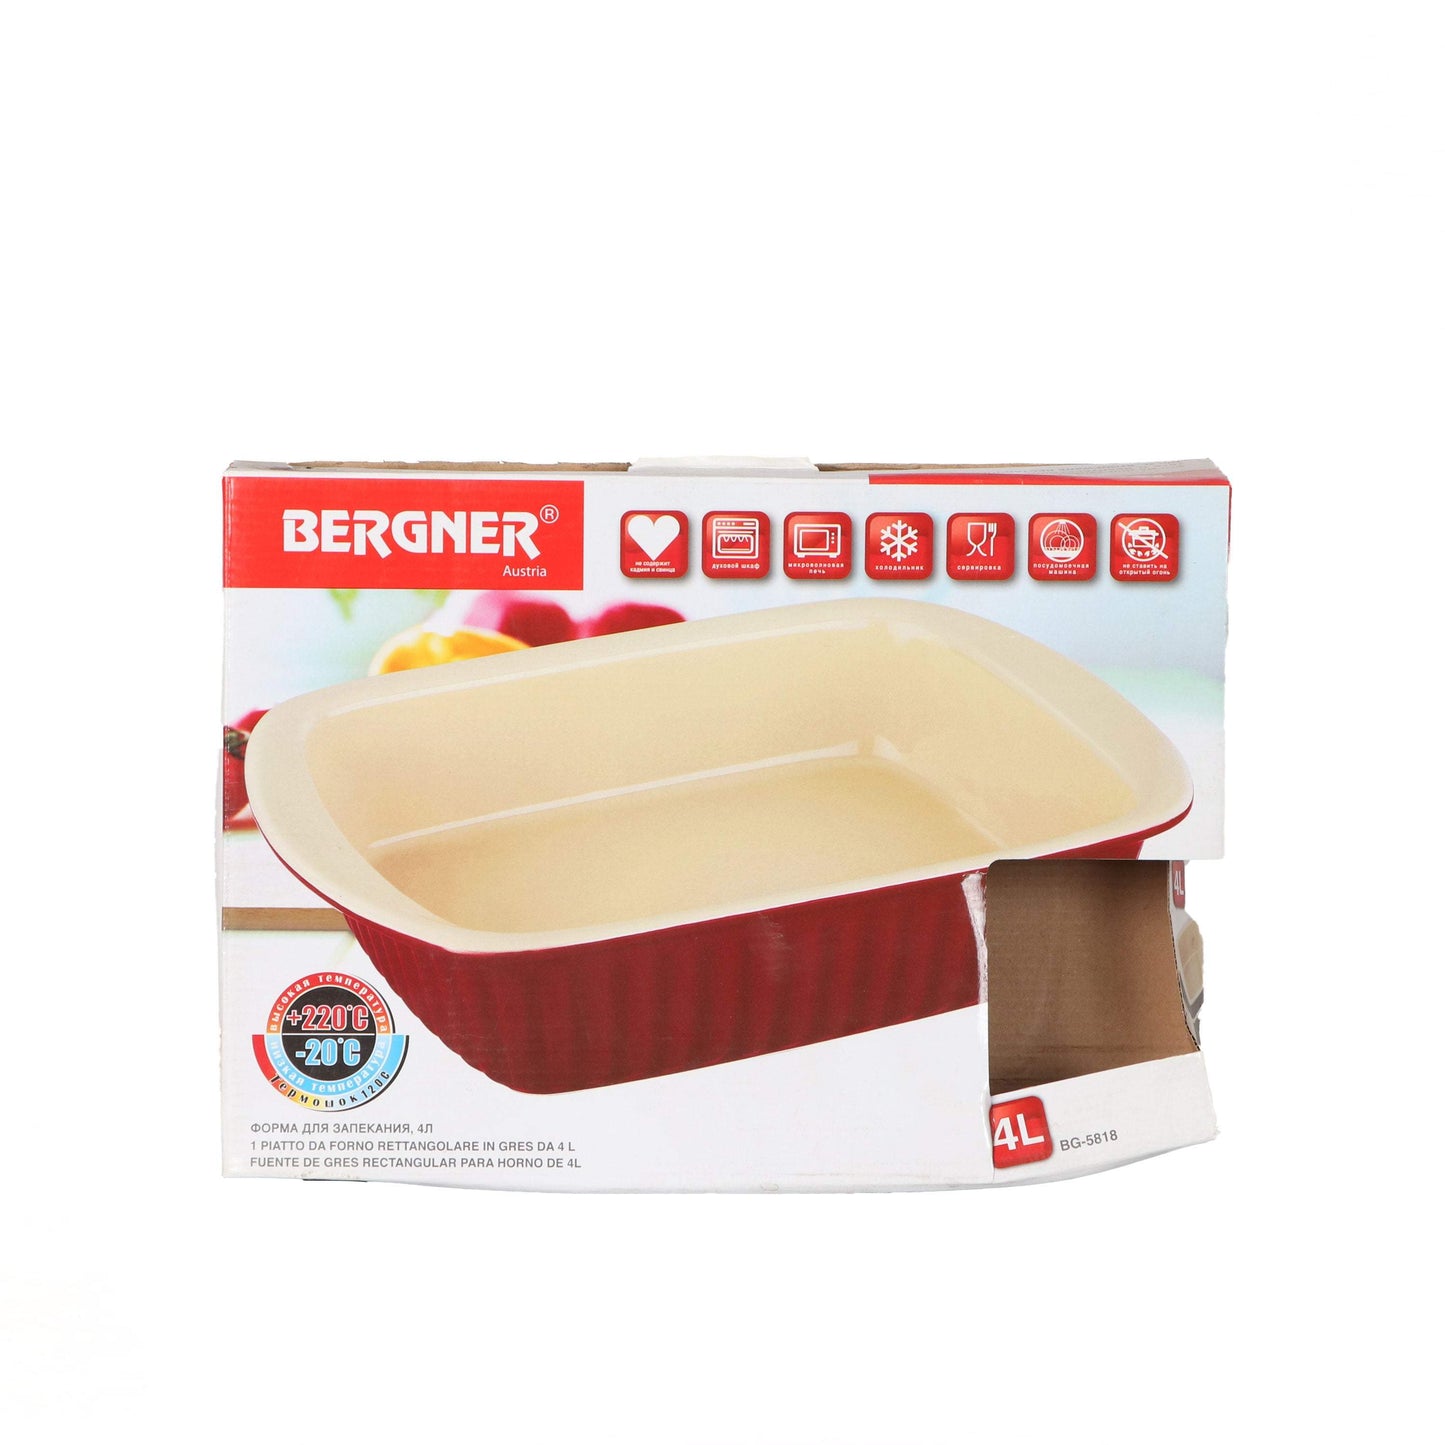 Bergner Rectangle Oven Pan 4 L-Royal Brands Co-